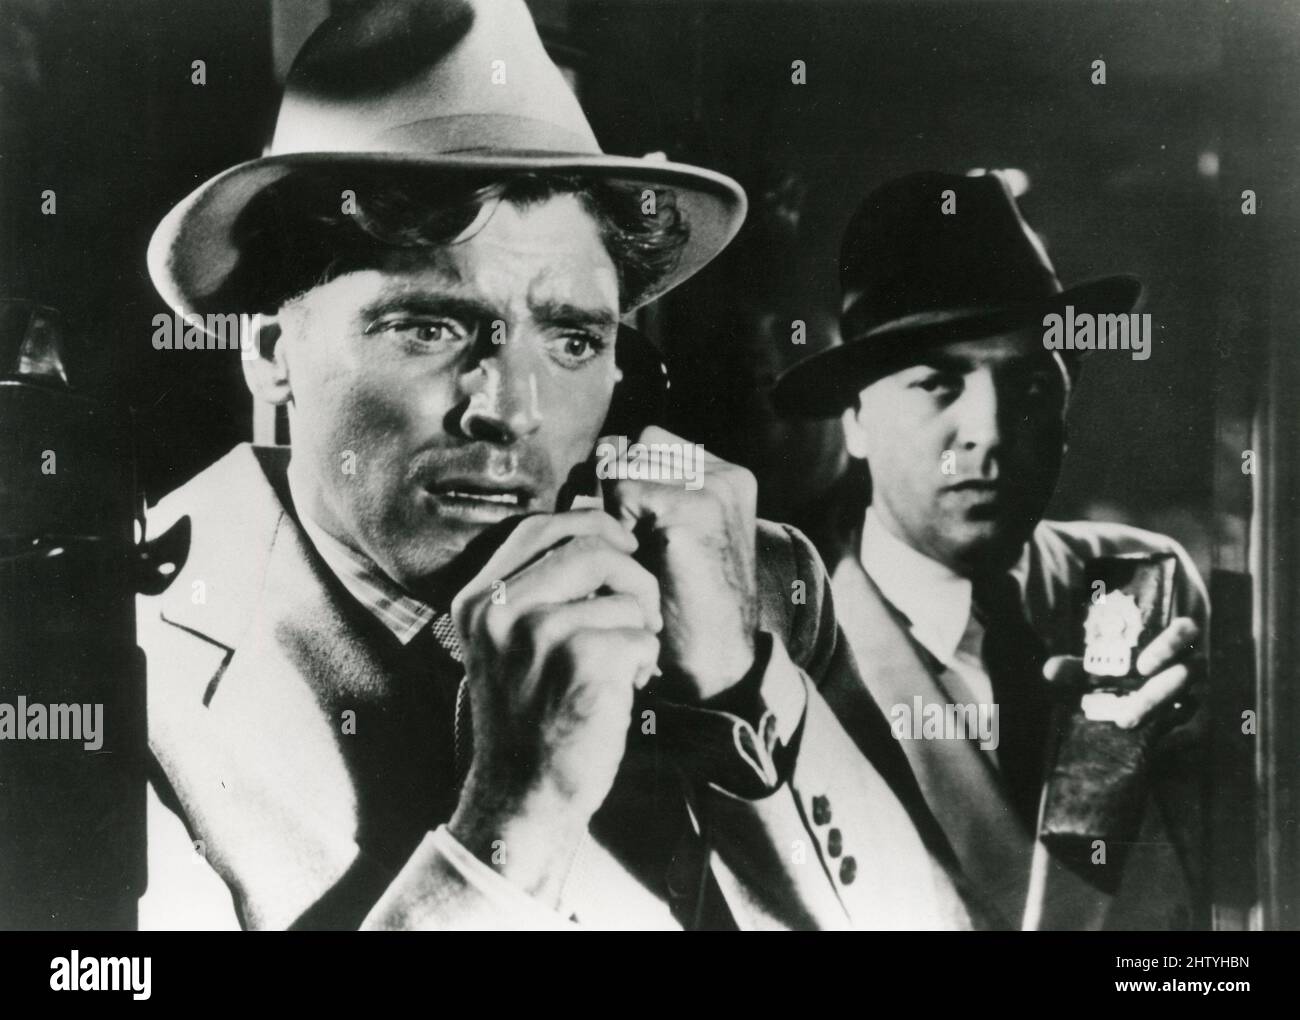 El actor estadounidense Burt Lancaster en la película Lo siento, número equivocado, EE.UU. 1948 Foto de stock